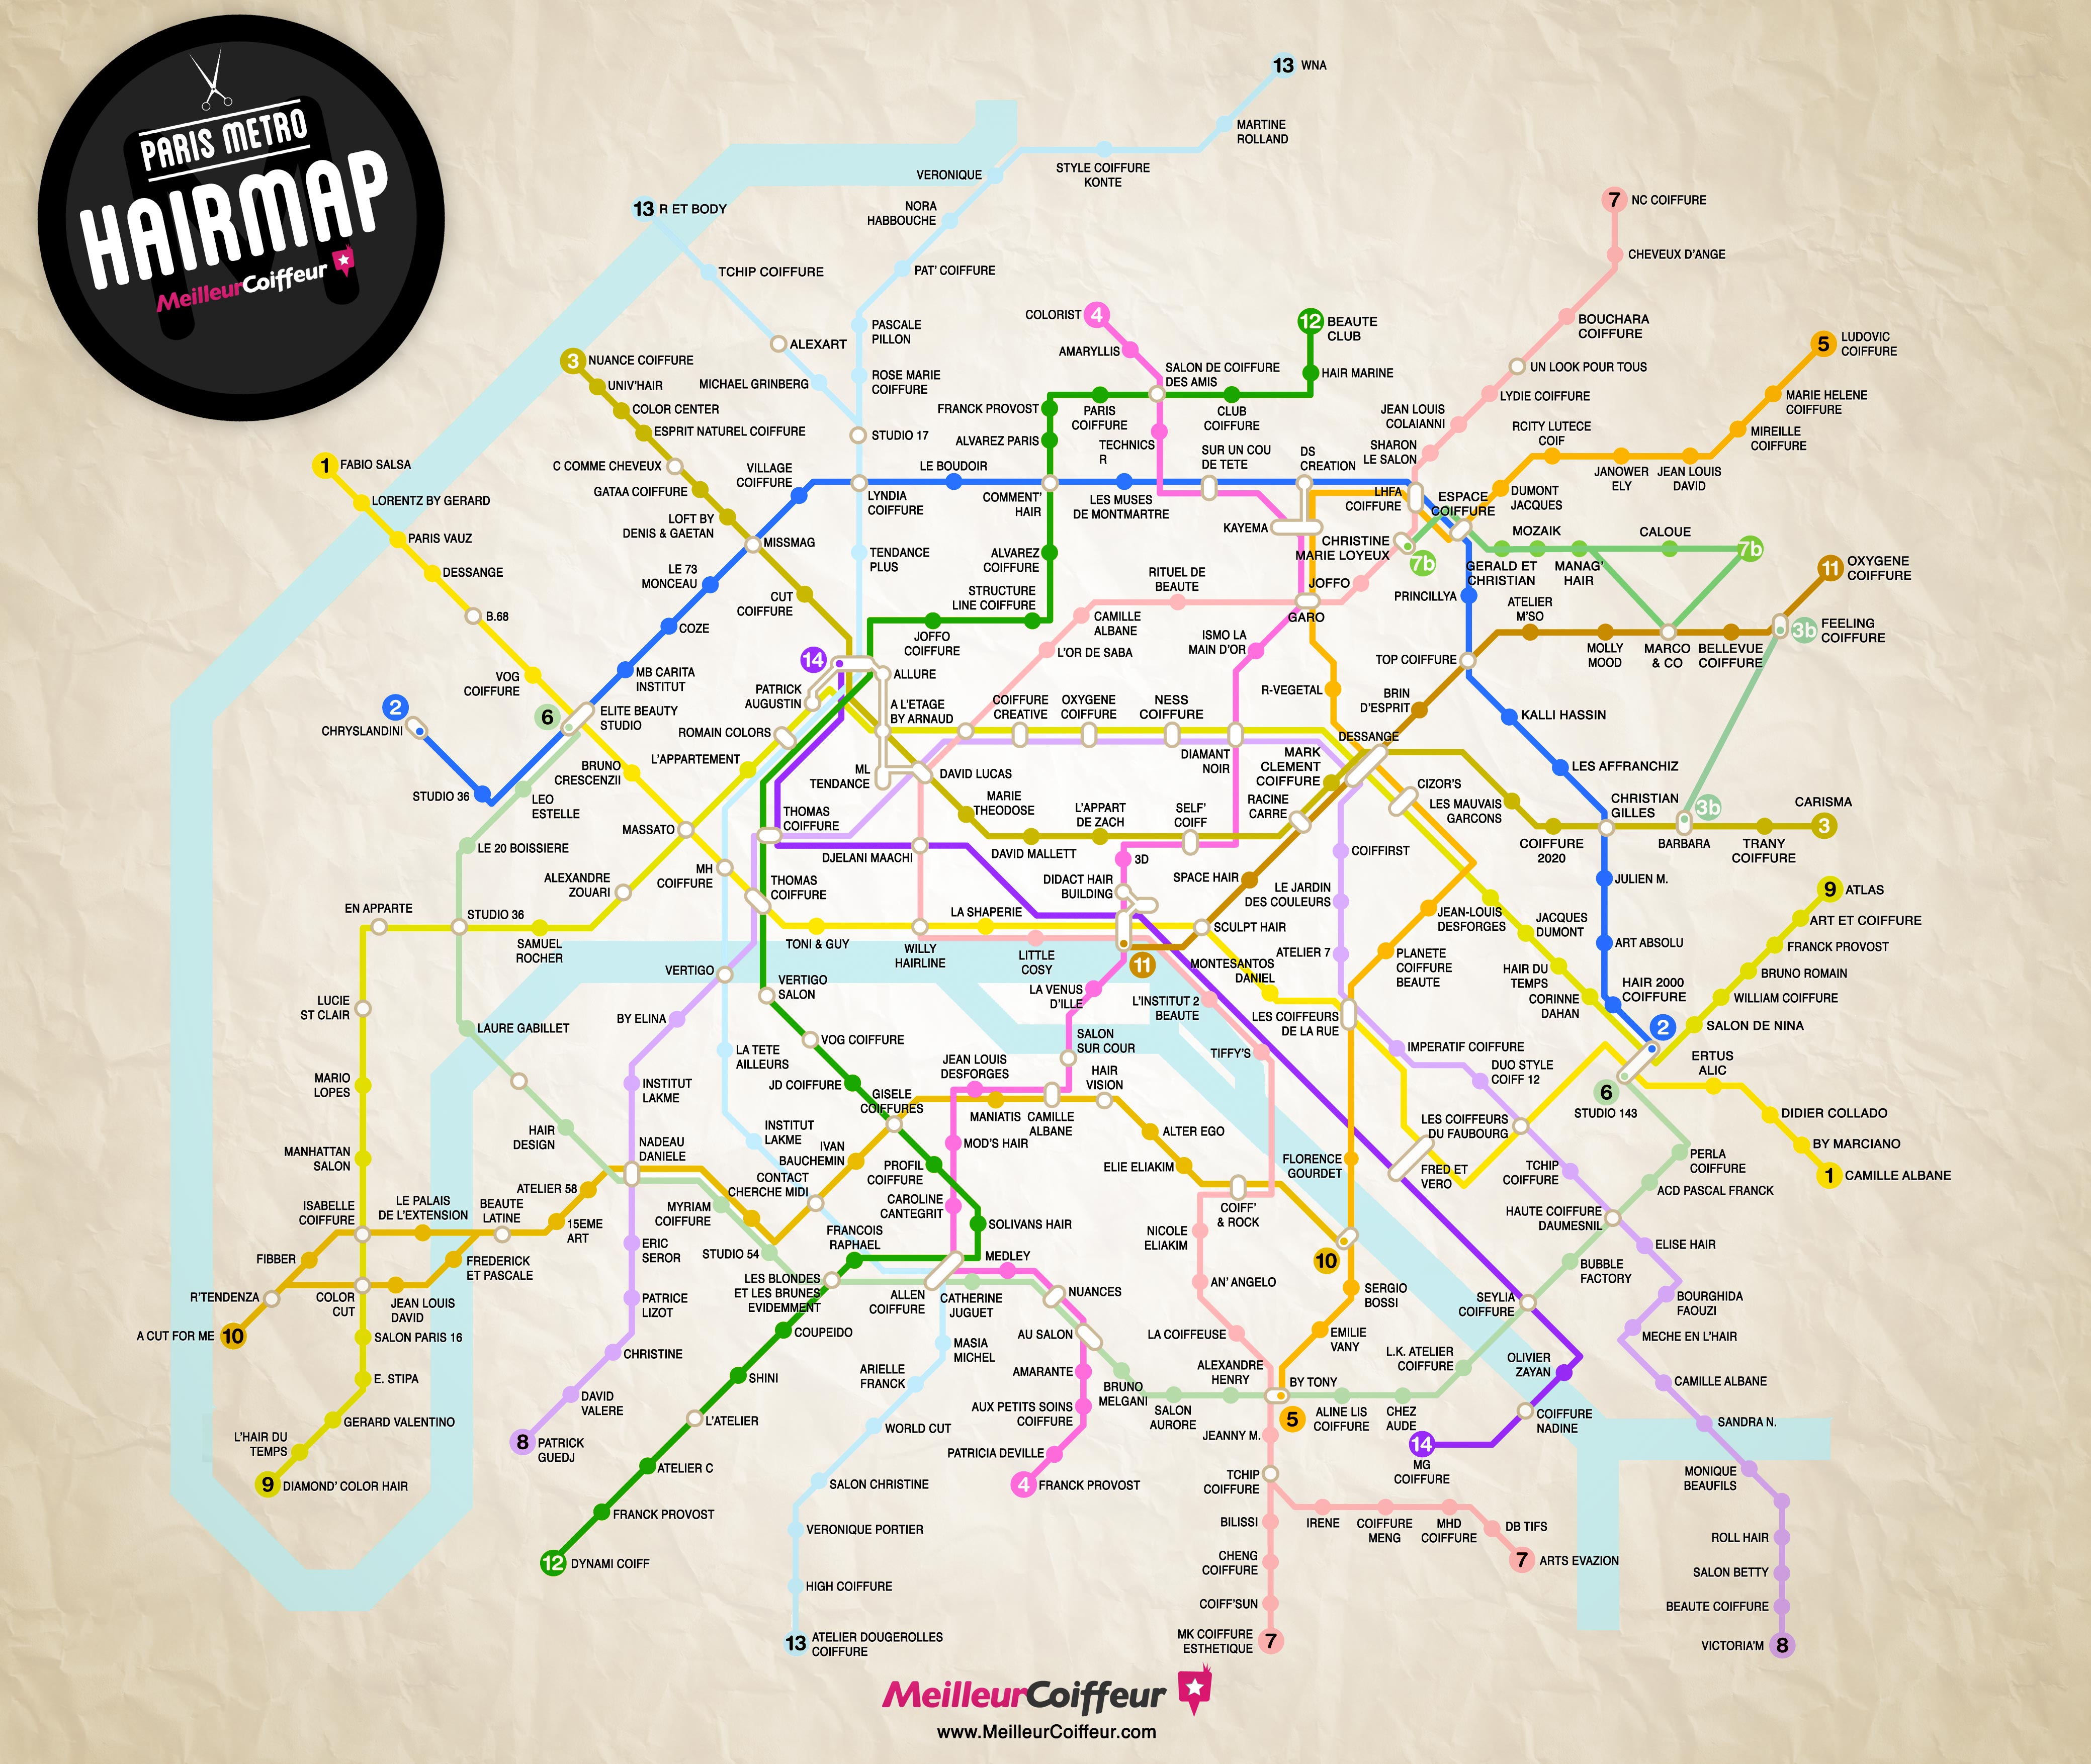 Carte de métro des meilleurs salons de coiffure de Paris